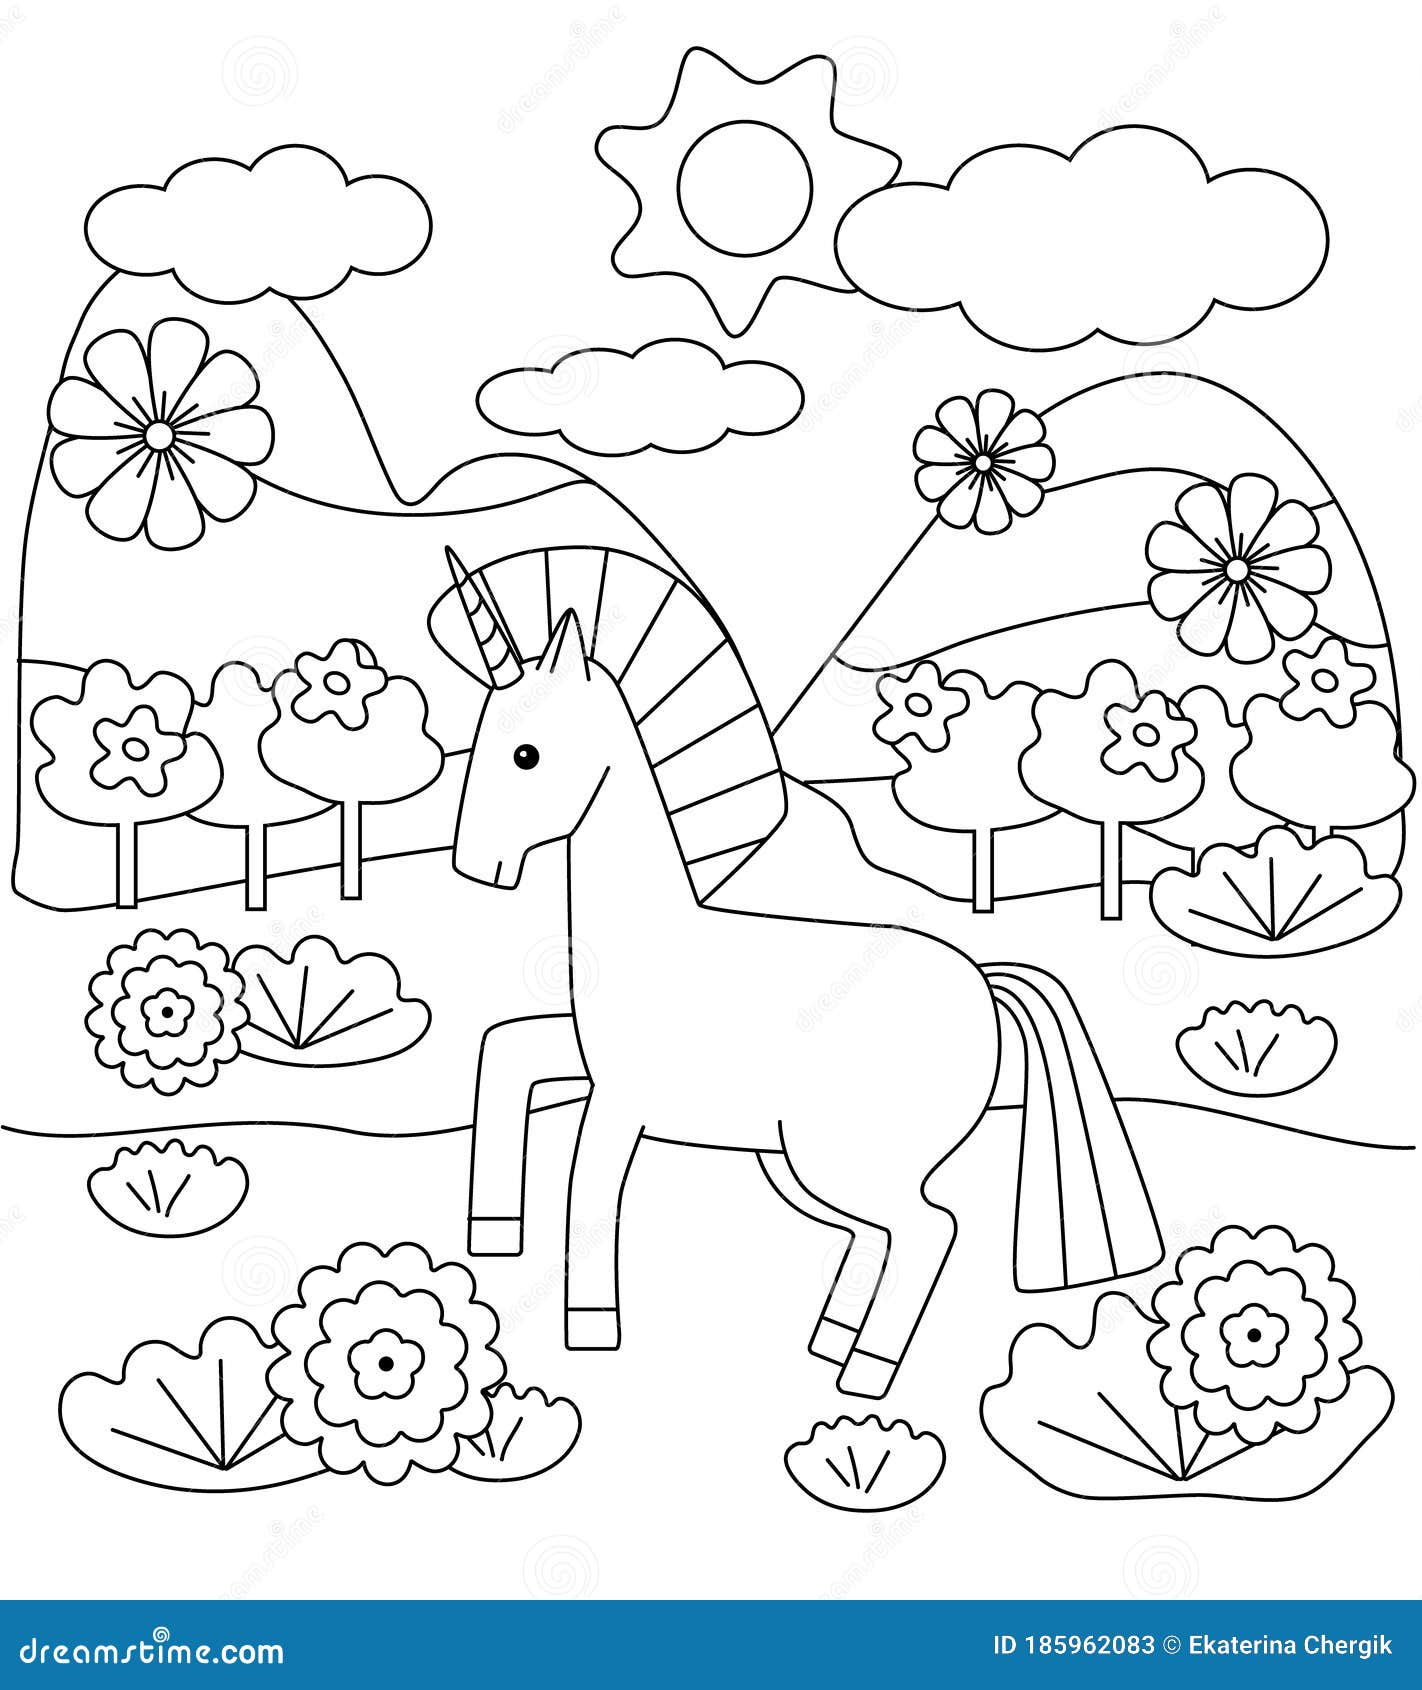 Desenhos de unicórnio para colorir para crianças - Unicórnios